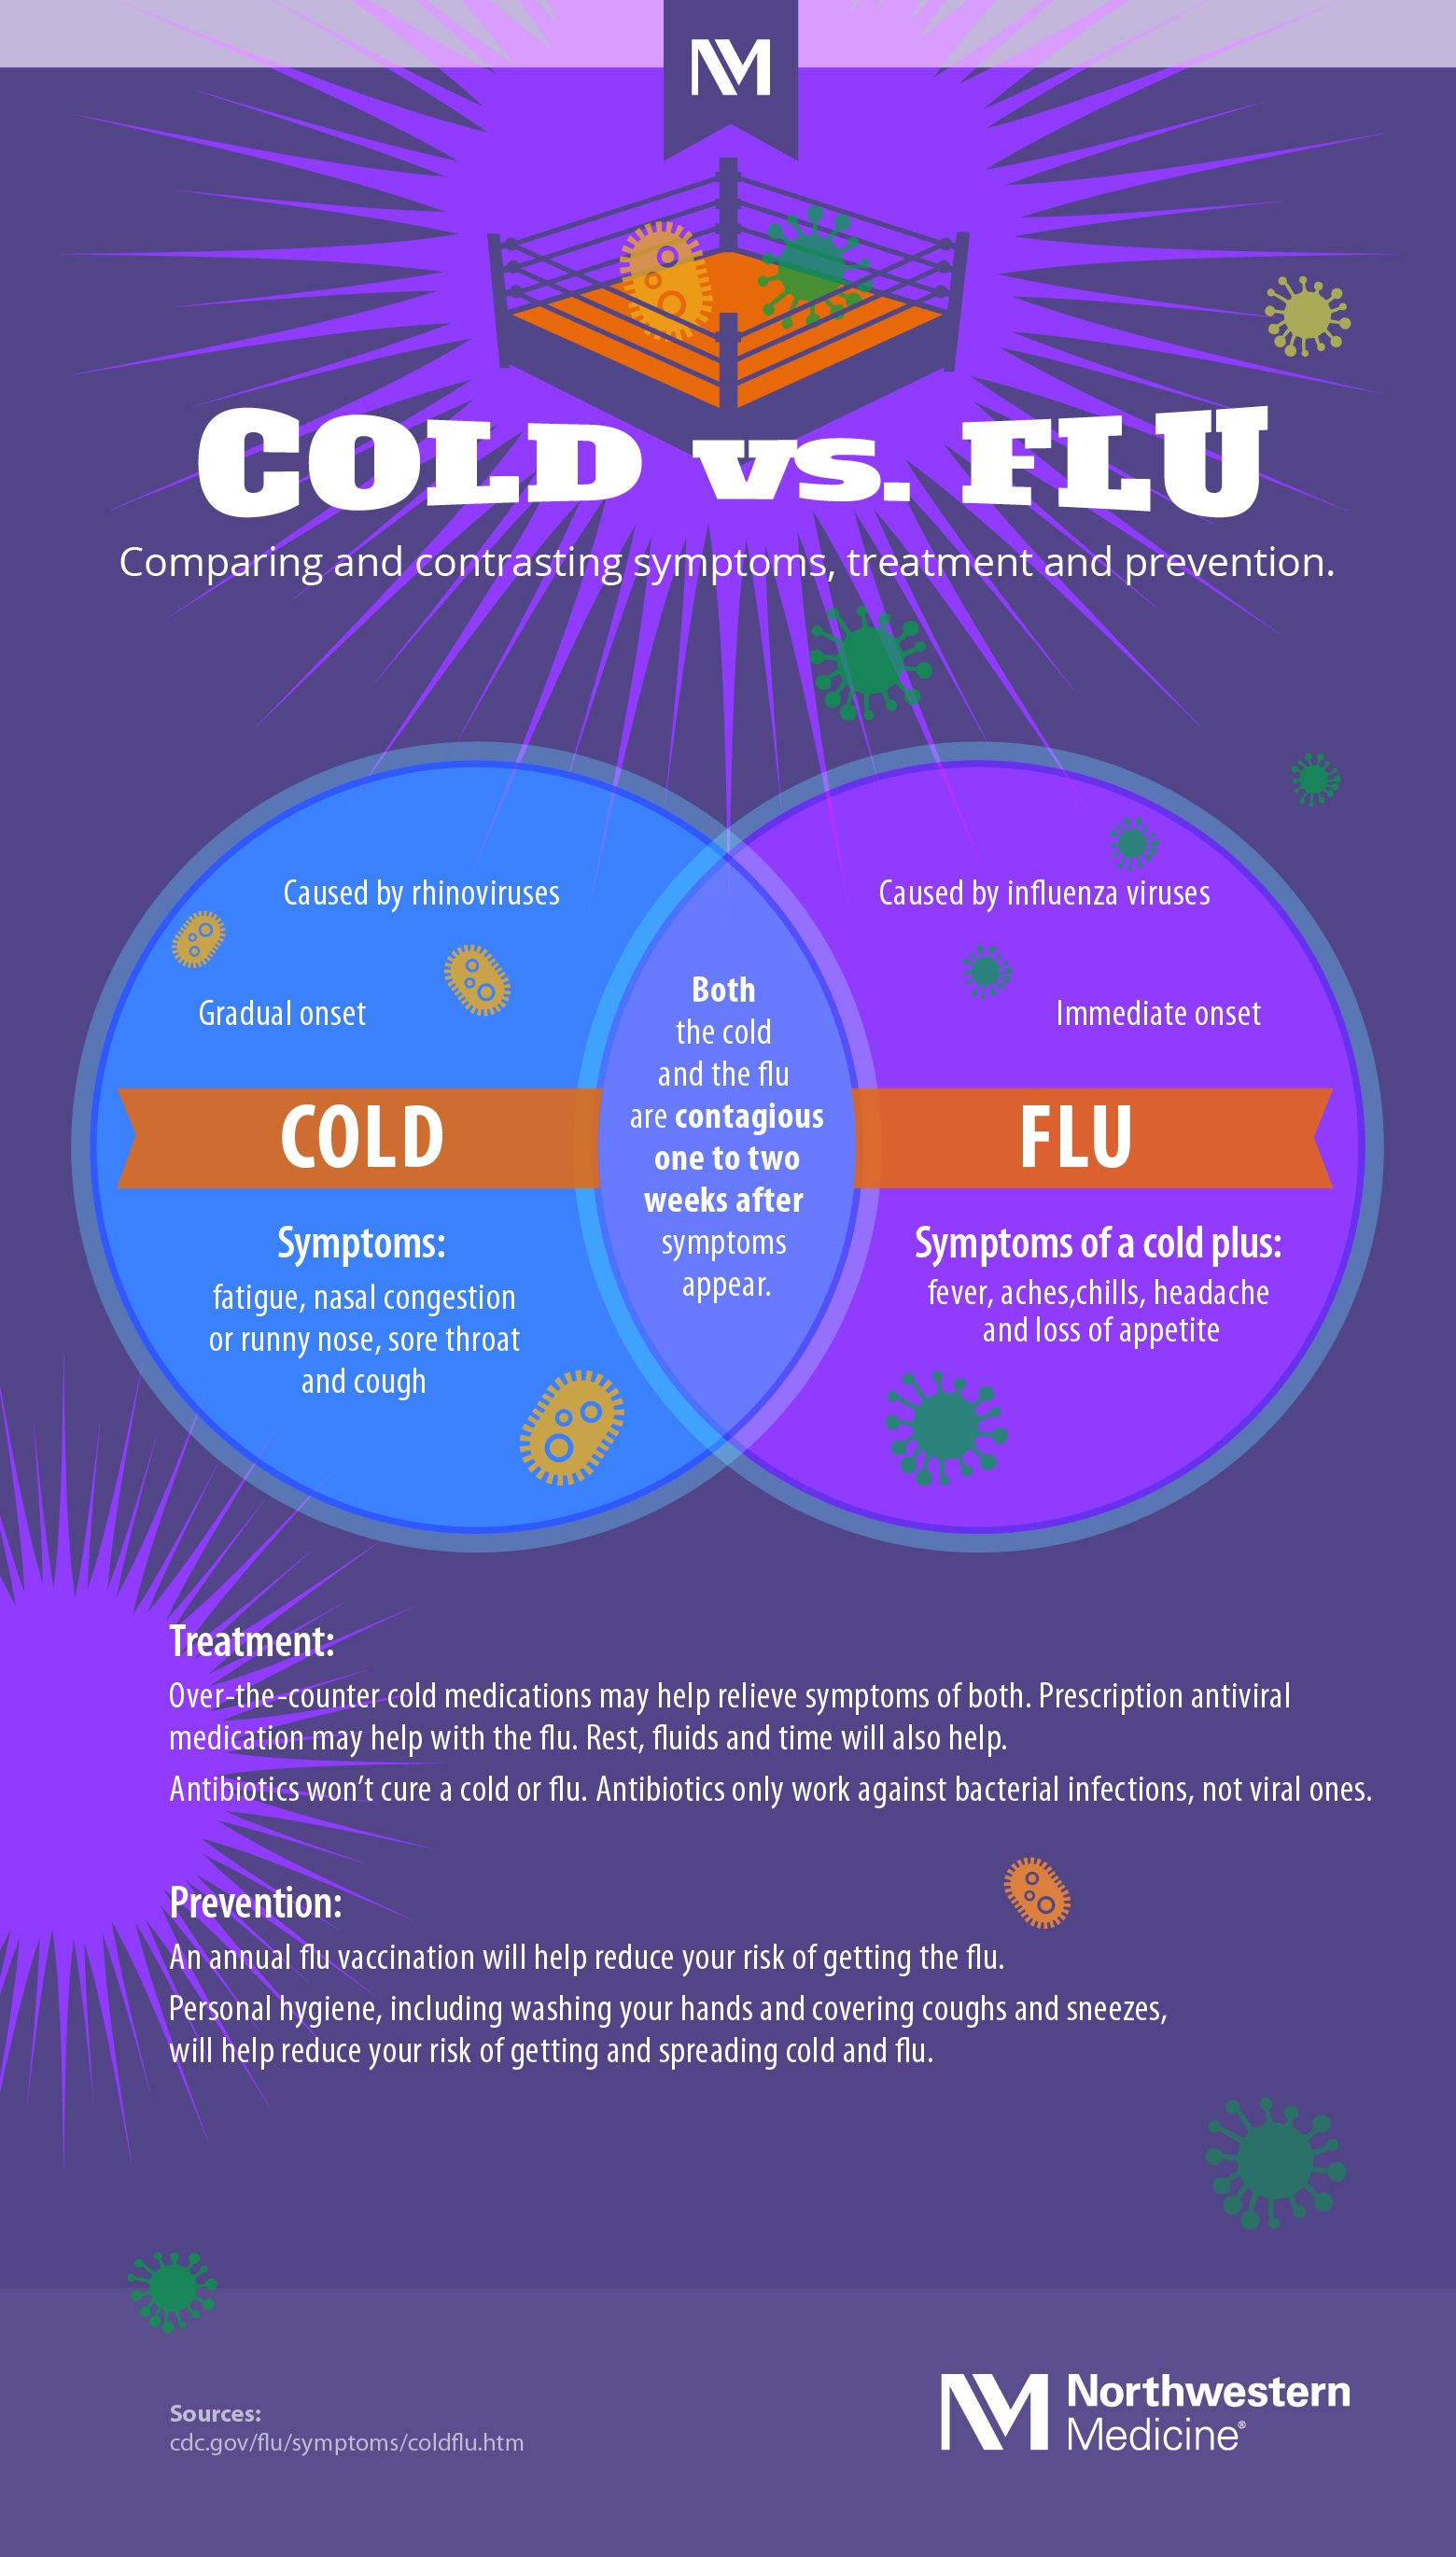 Common Cold: Symptoms, Cold vs. Flu, Treatment